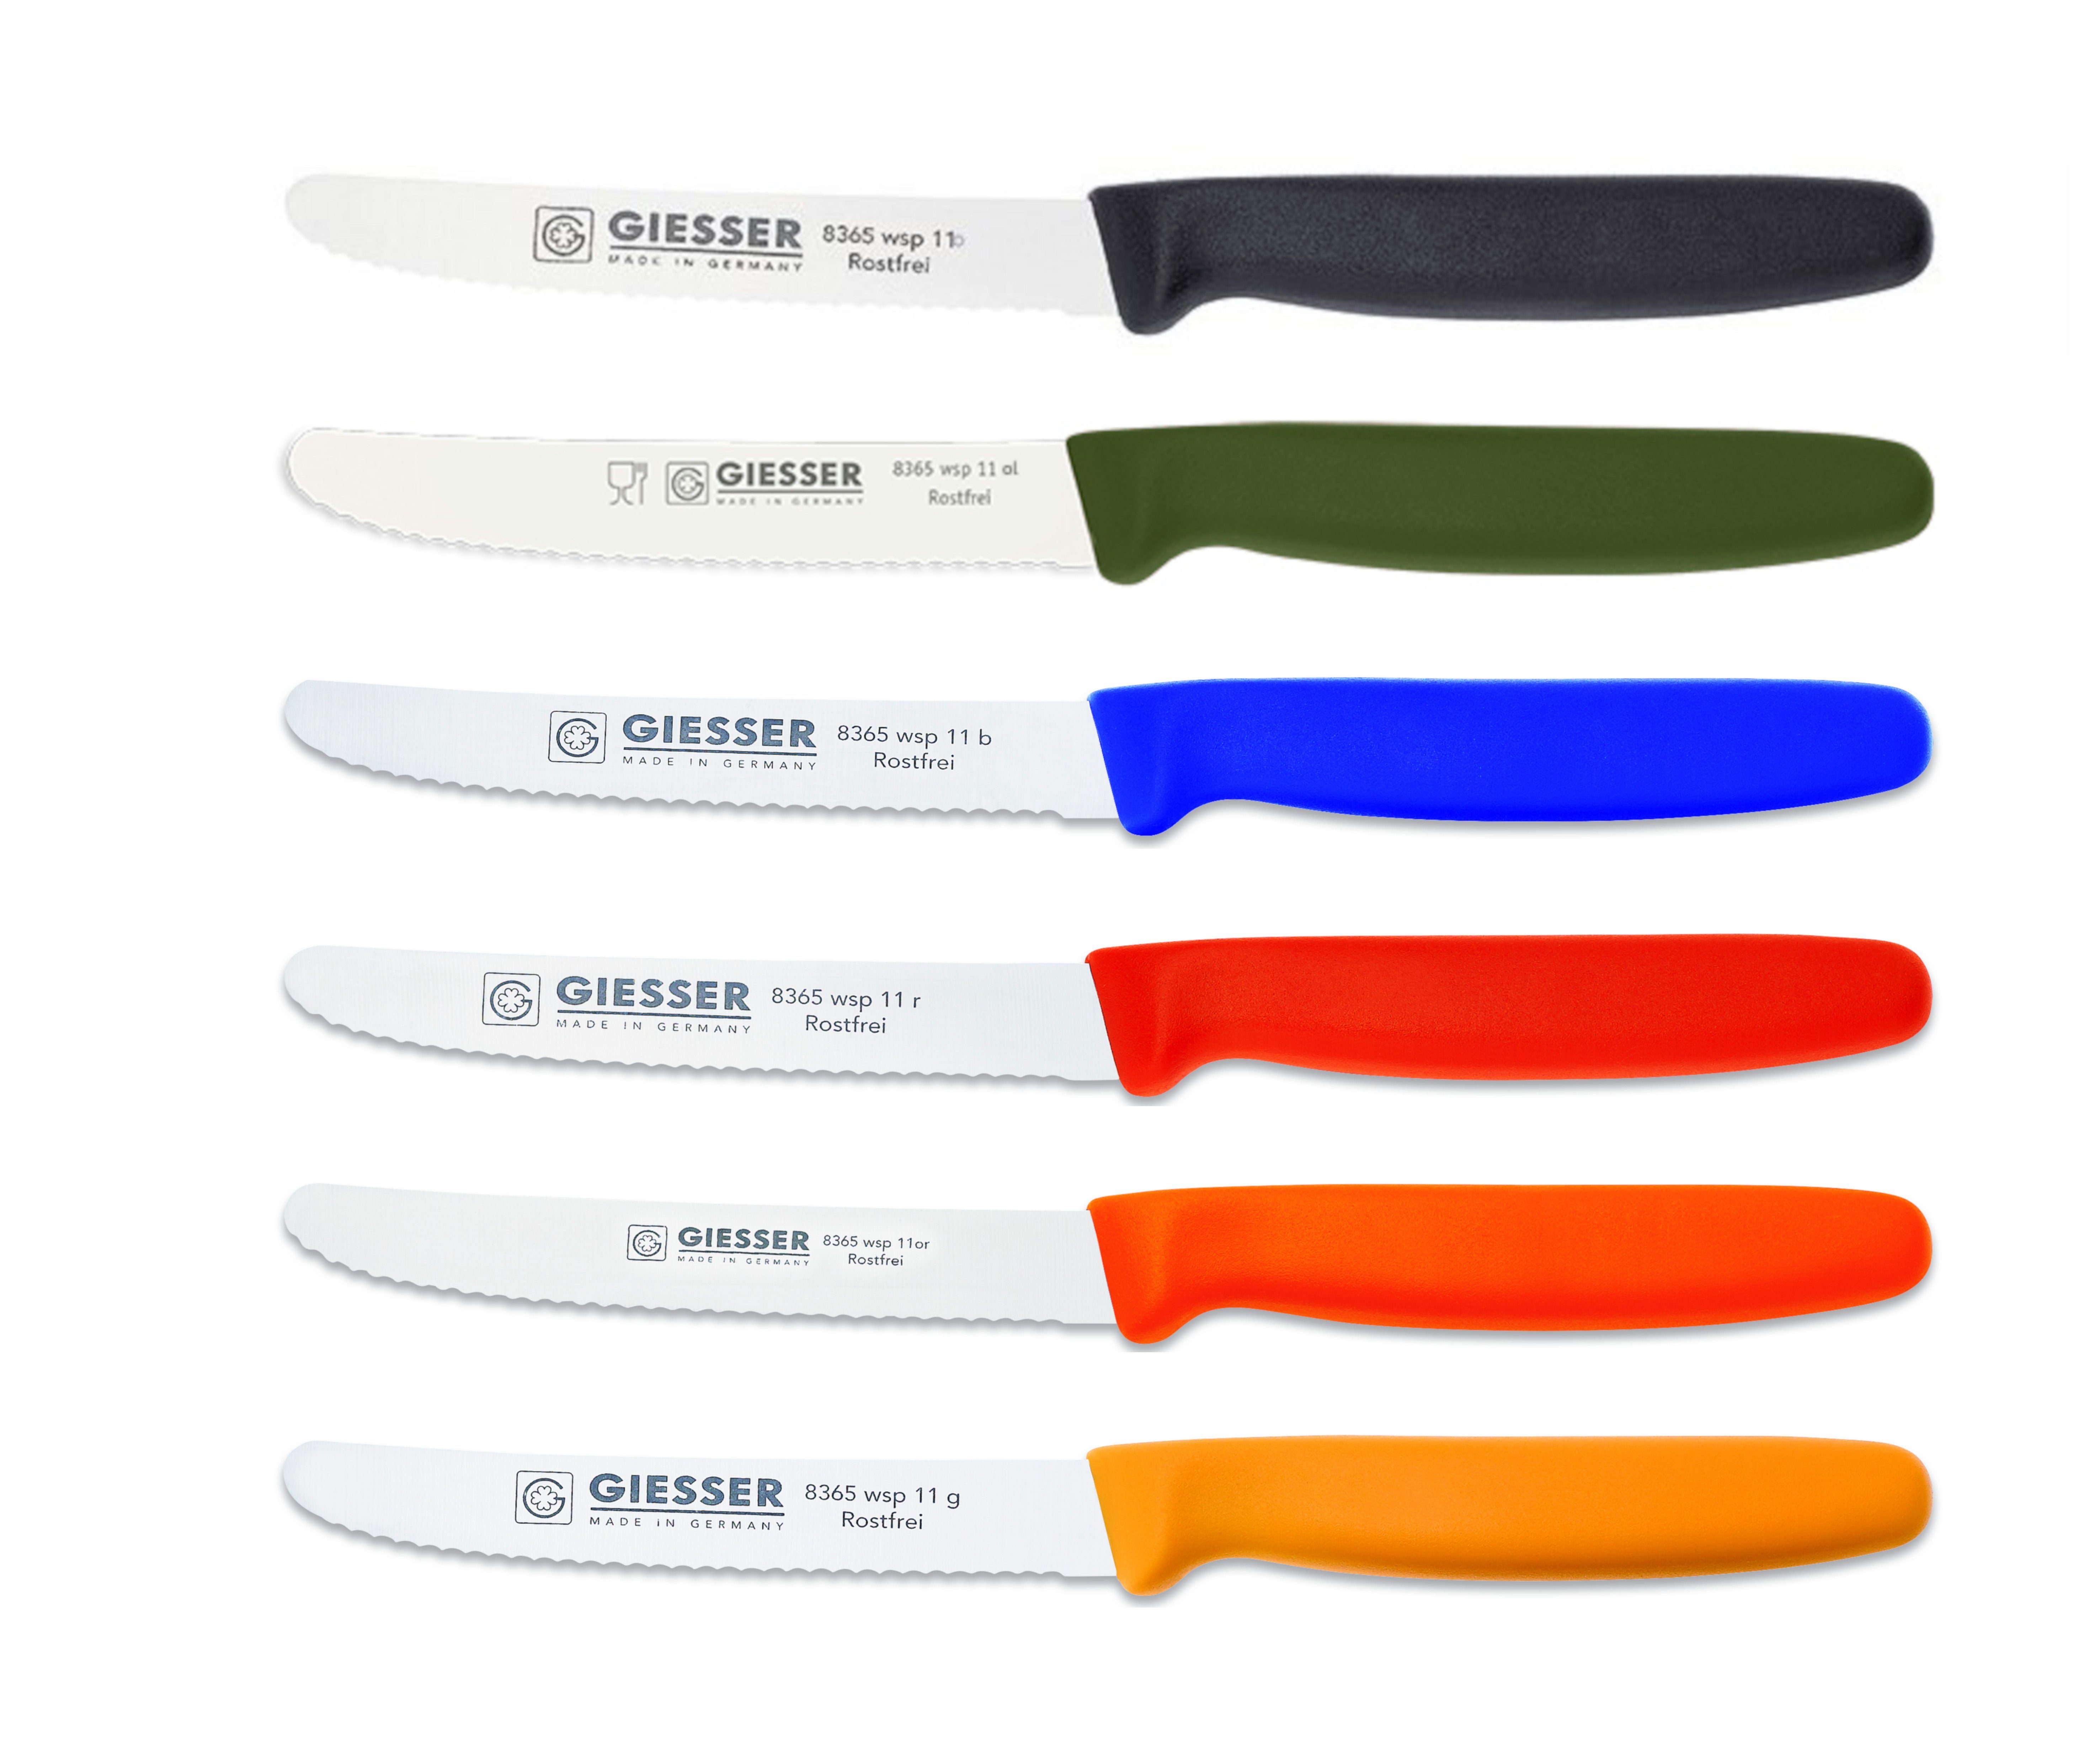 Giesser Messer Tomatenmesser Brötchenmesser 8365 wsp 11-6, 6er Set bunt gemischt; 3mm Wellenschliff; extrem Scharf s-ol-b-r-or-g